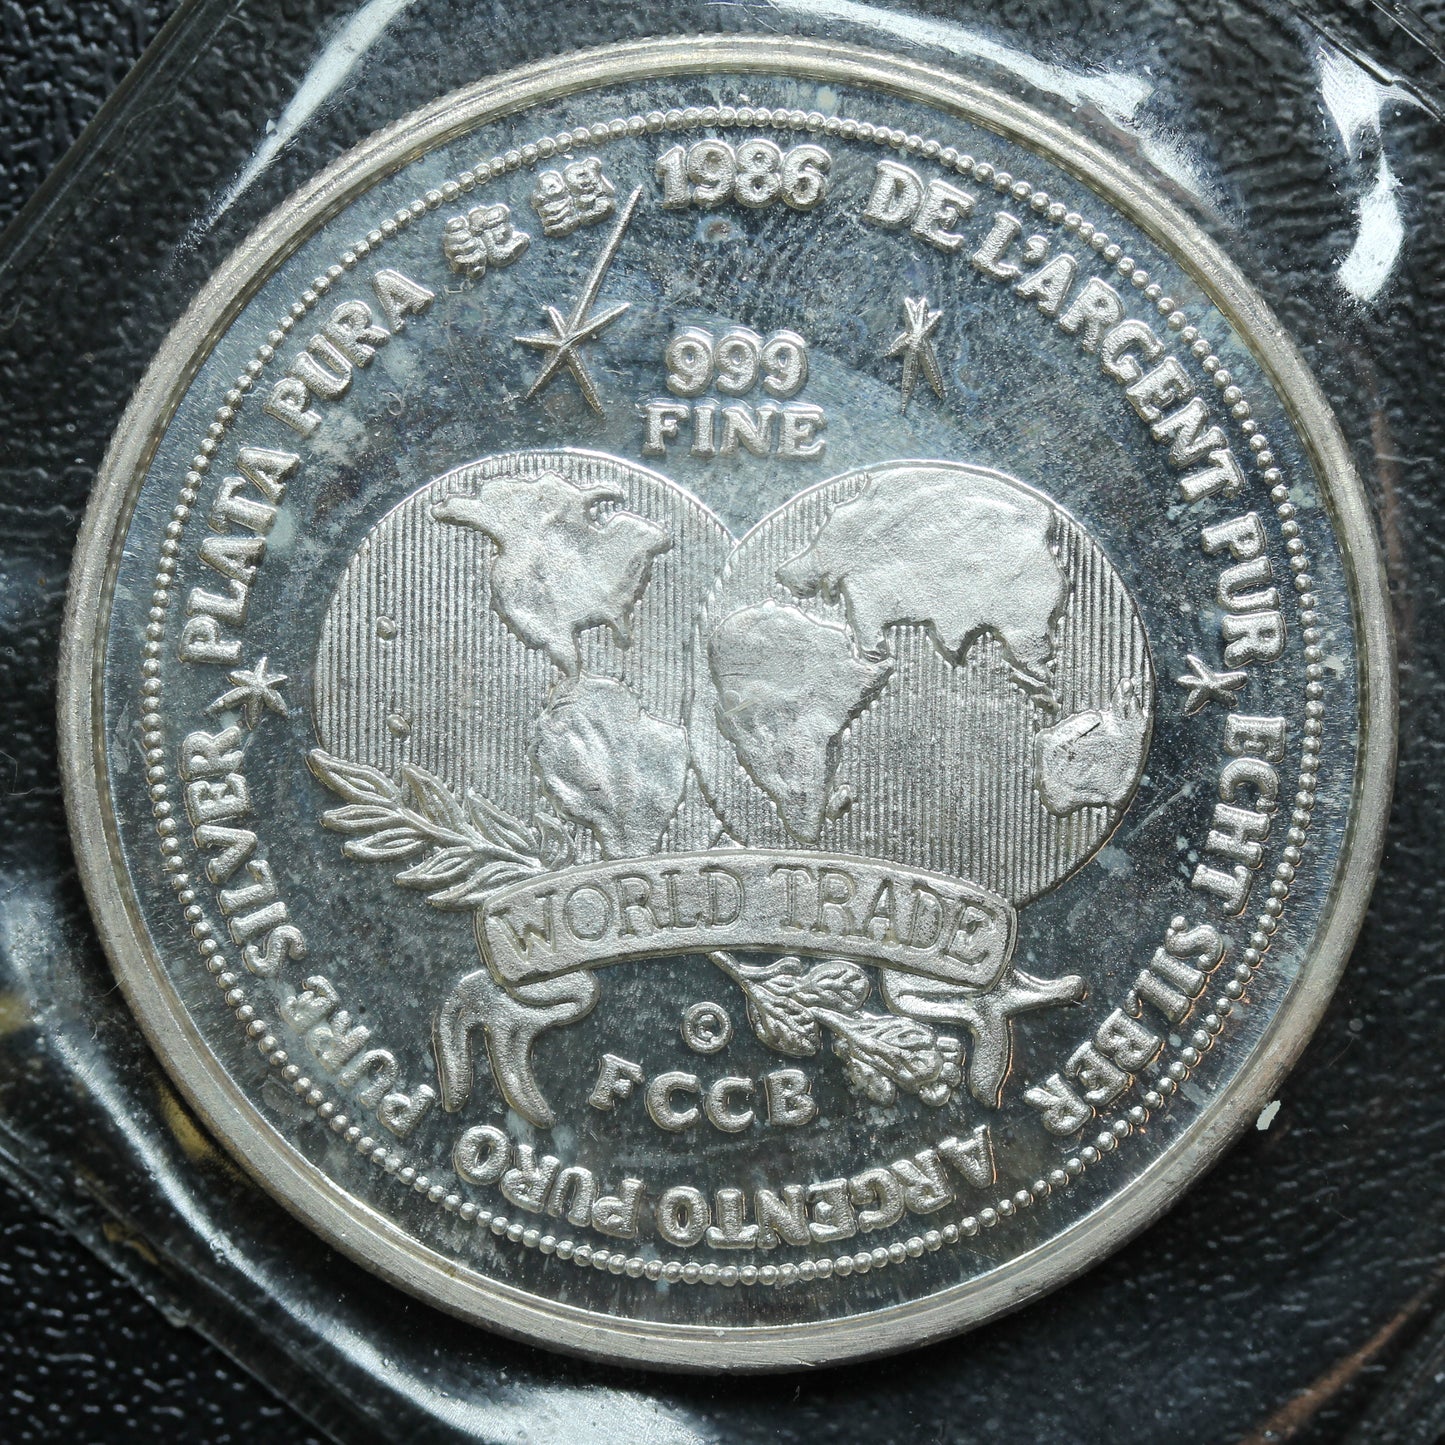 1986 World Trade Unit FCCB Plata Pura 1 oz .999 Silver Round - SEALED